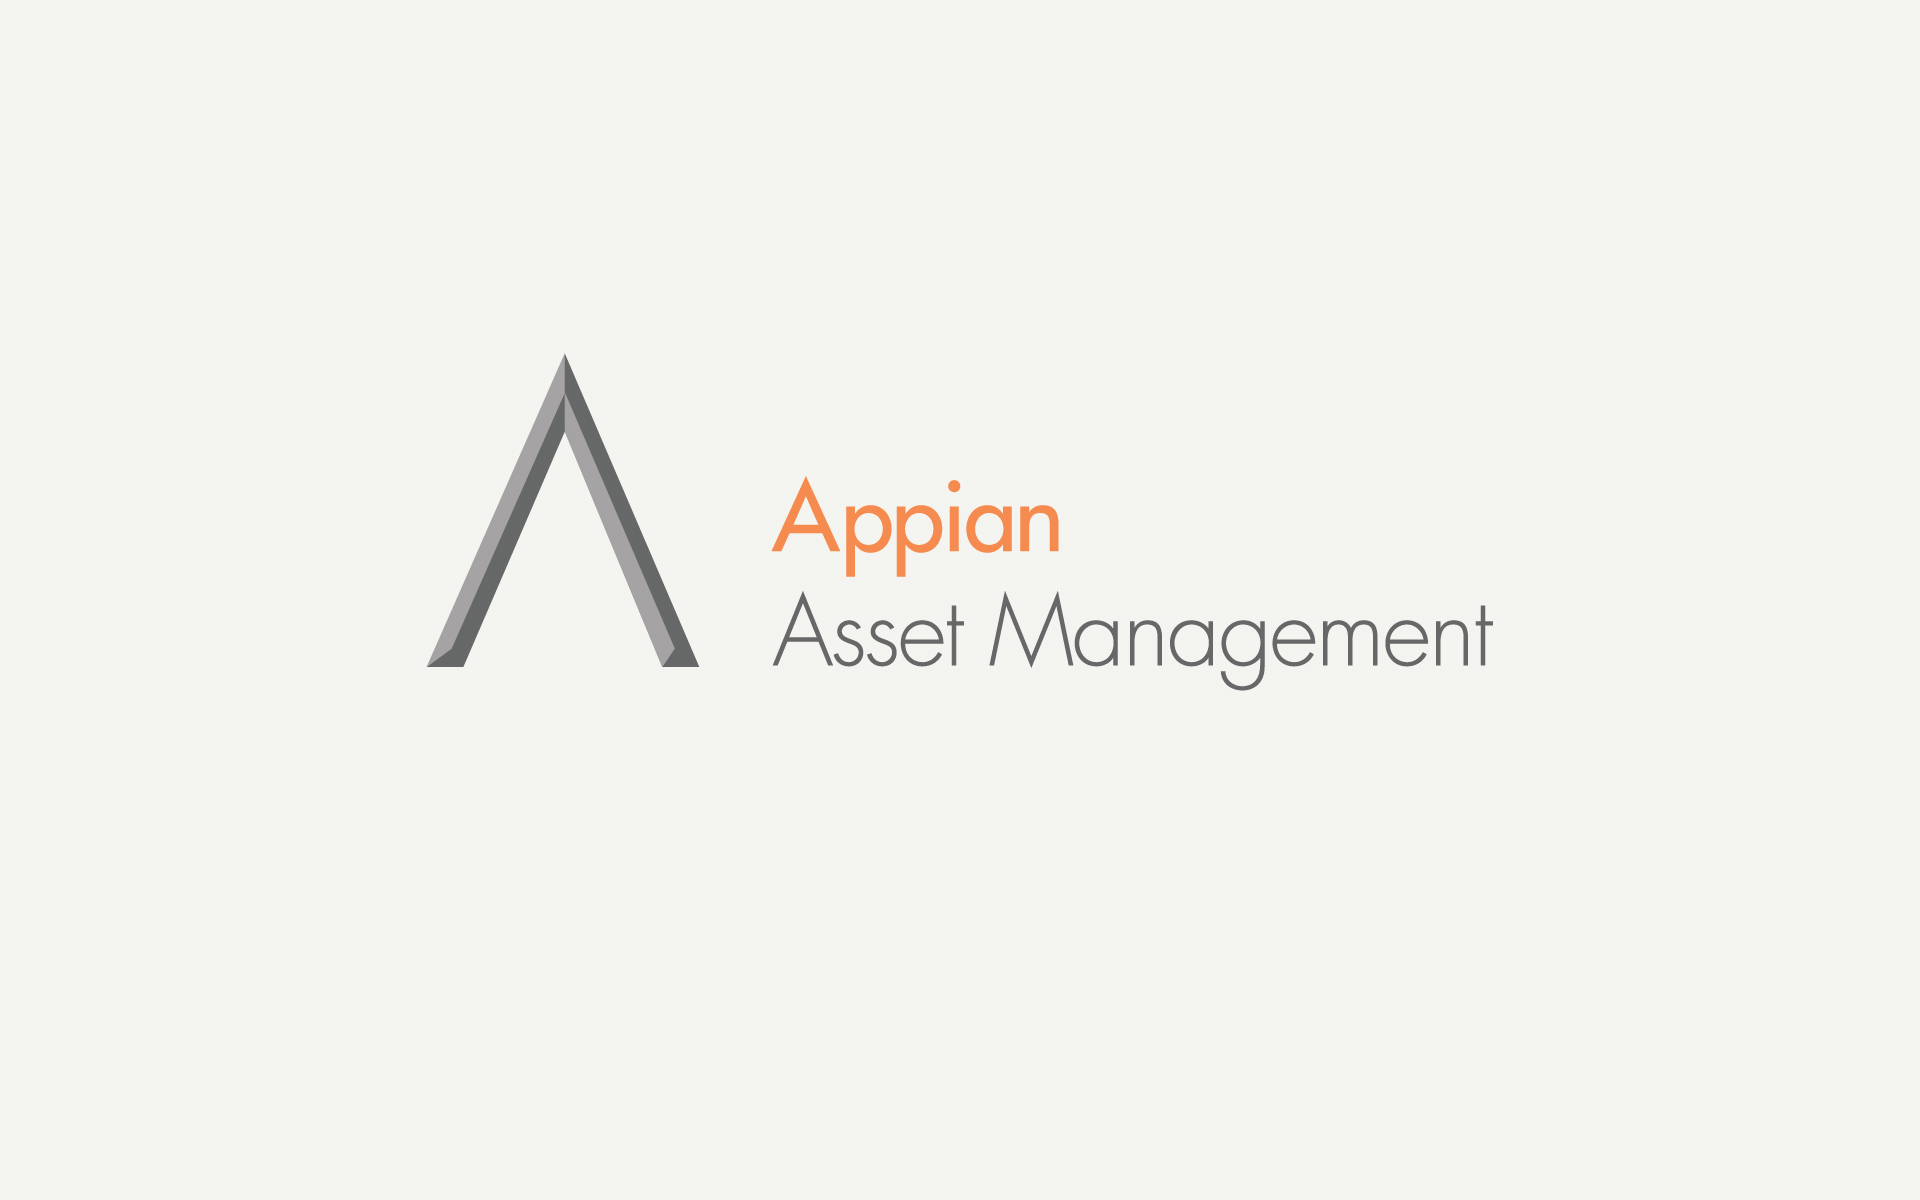 Appian Asset Management logo positive